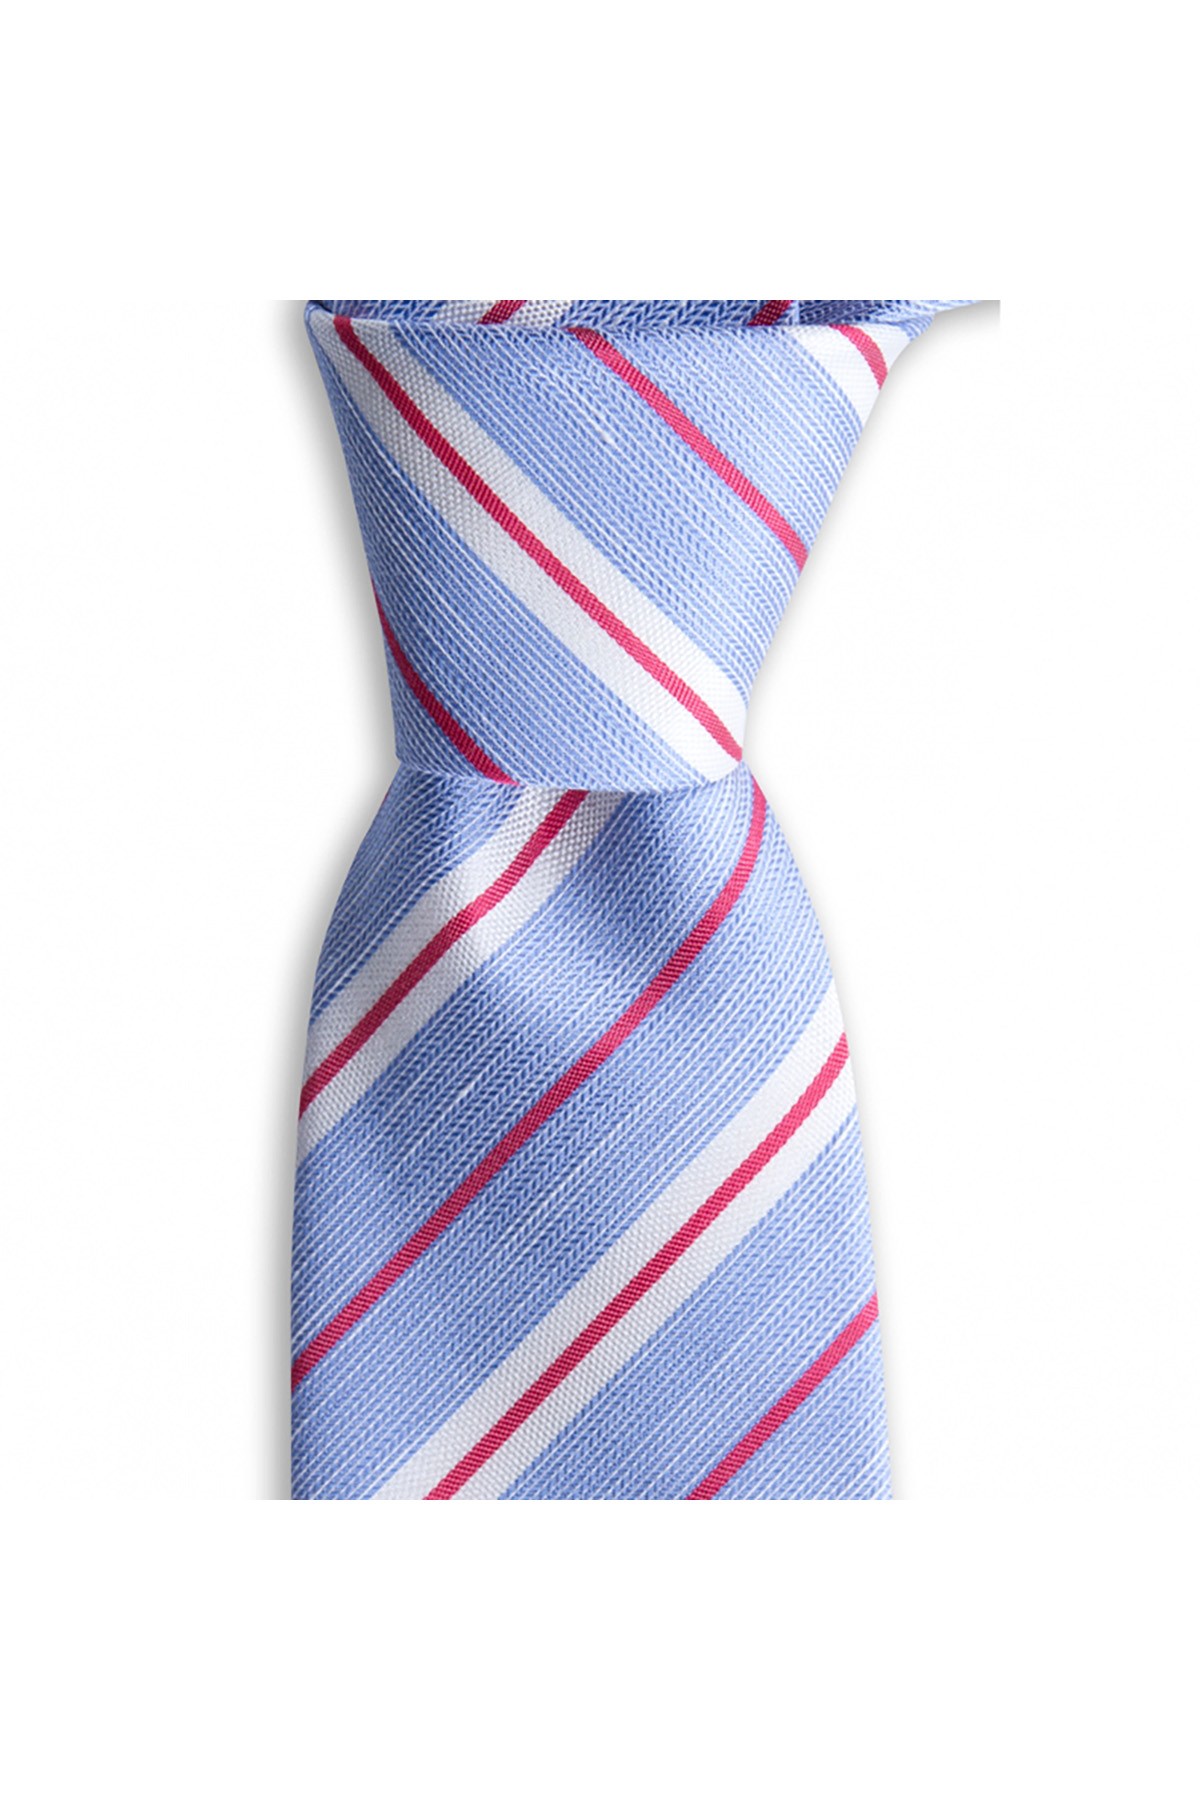 Klasik çizgili 8 cm genişliğinde keten ve ipek karışımlı kravat